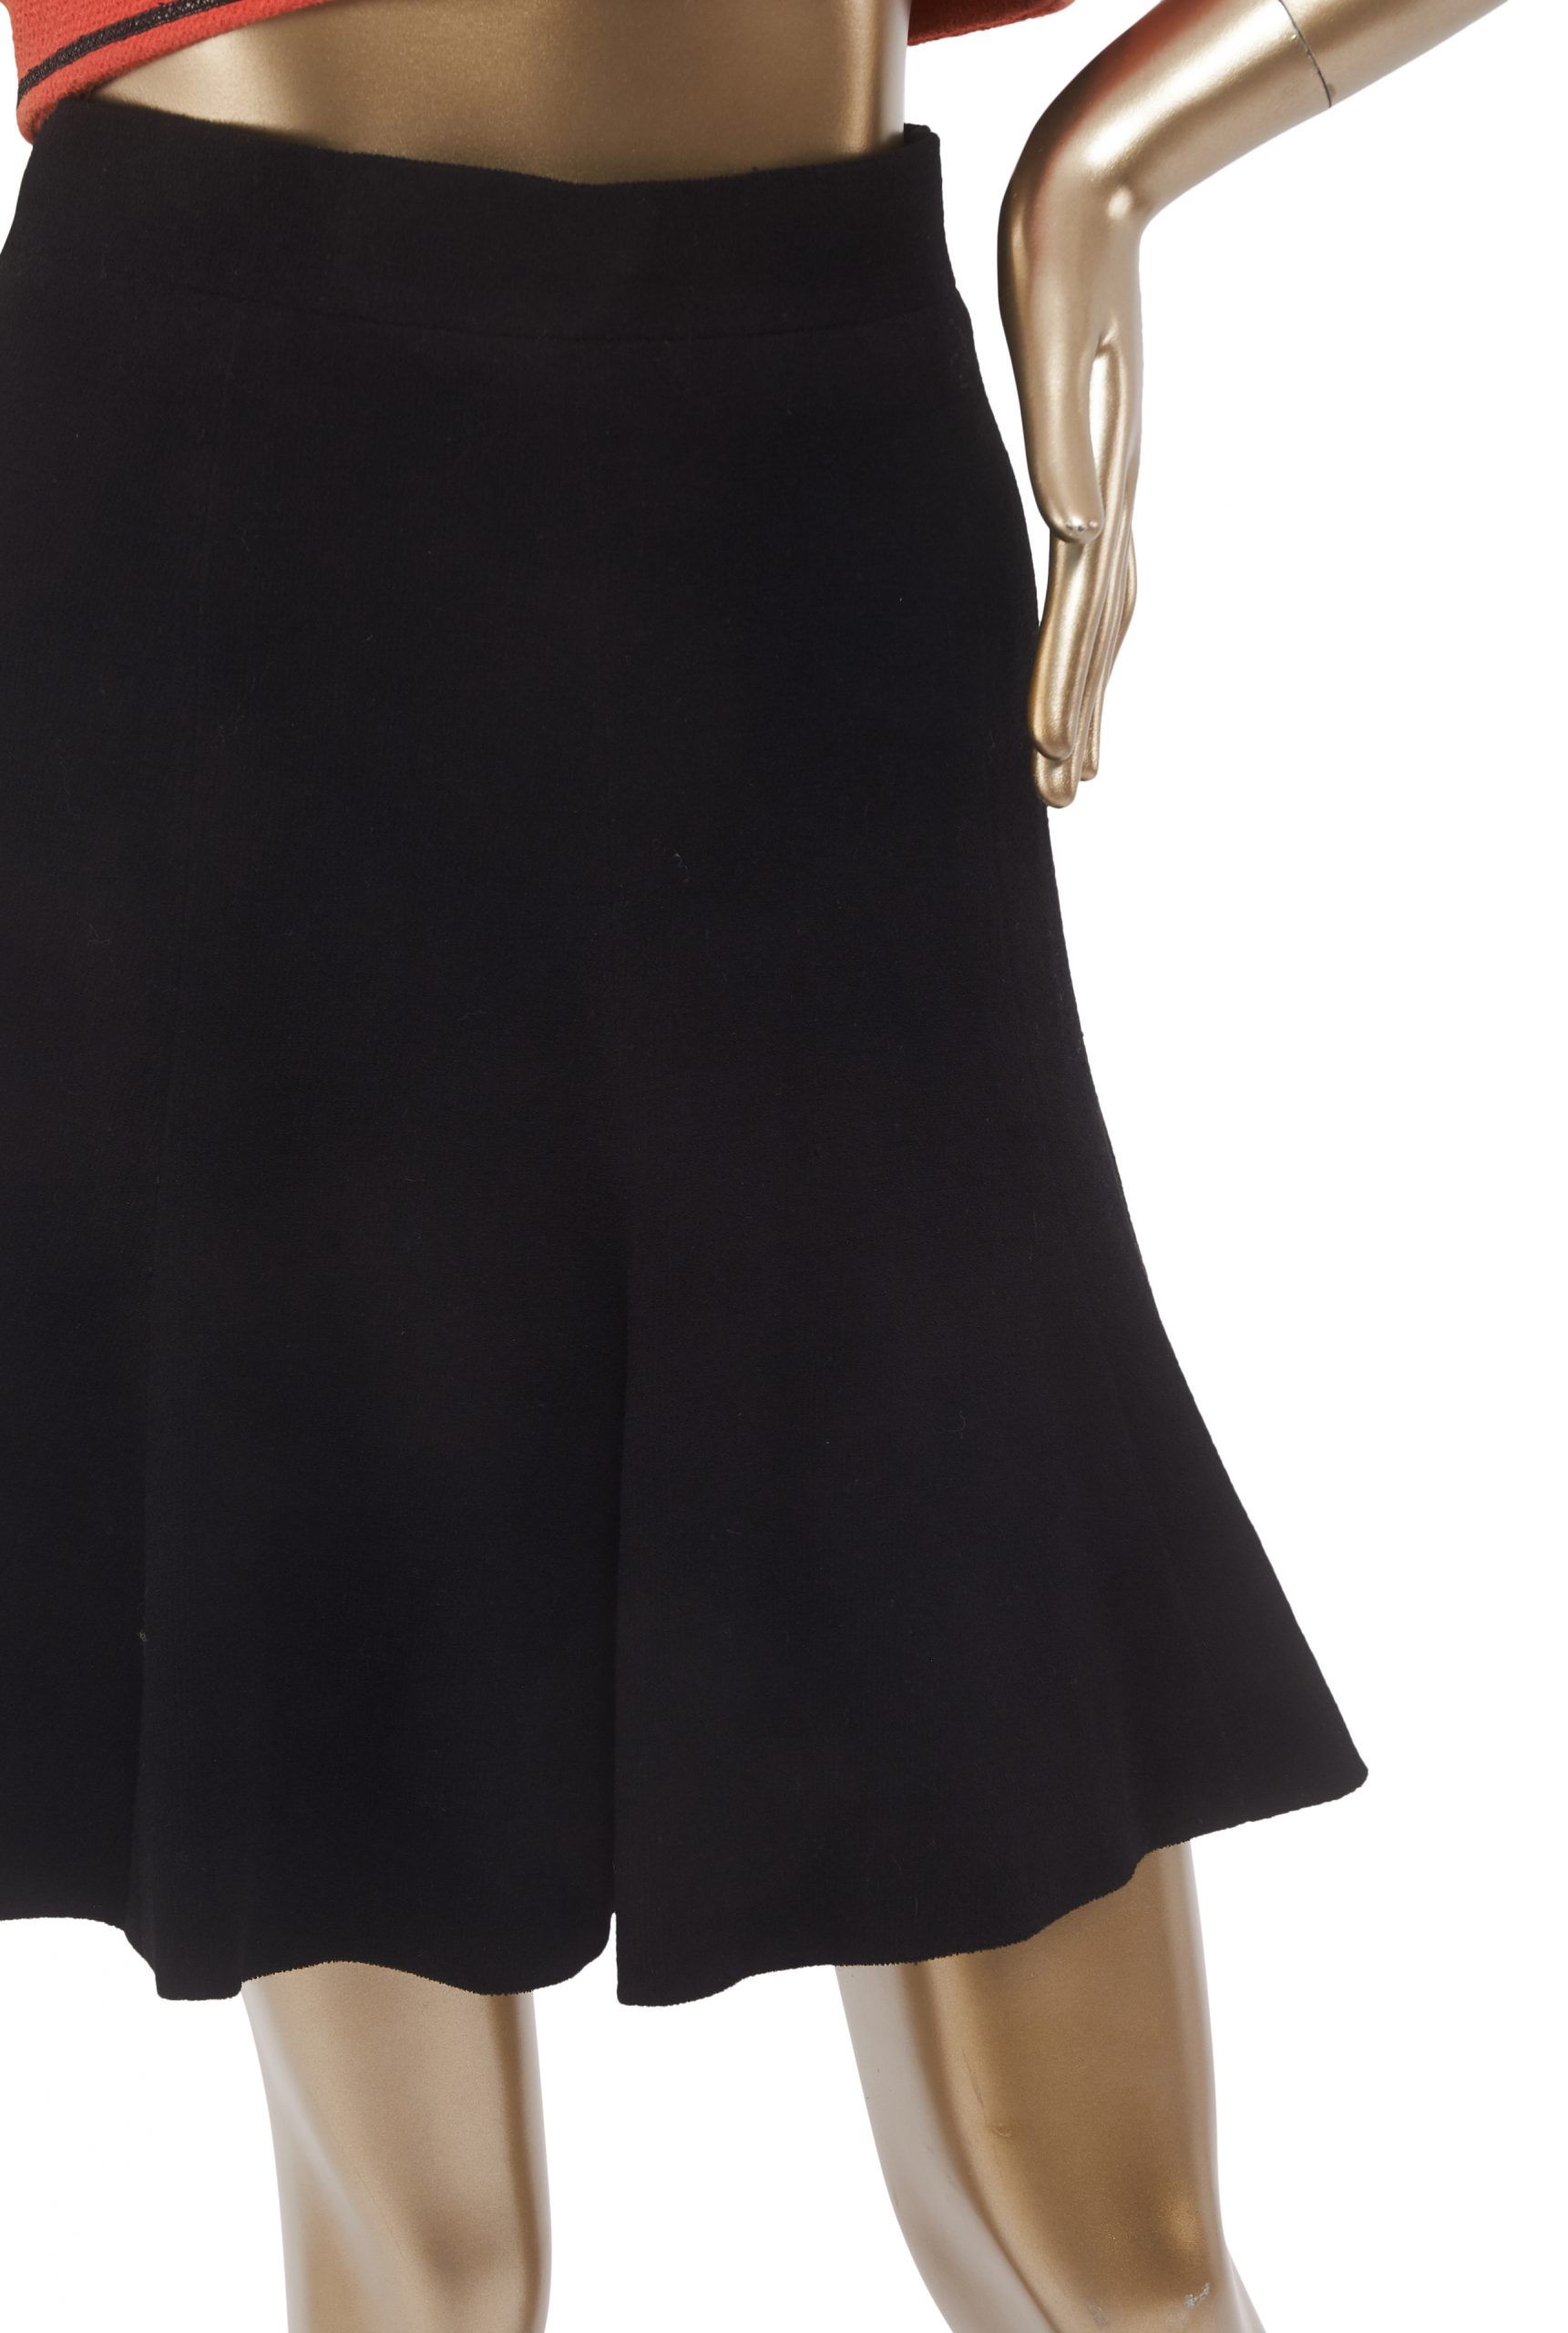 Vintage Chanel Jacket and Skirt Set